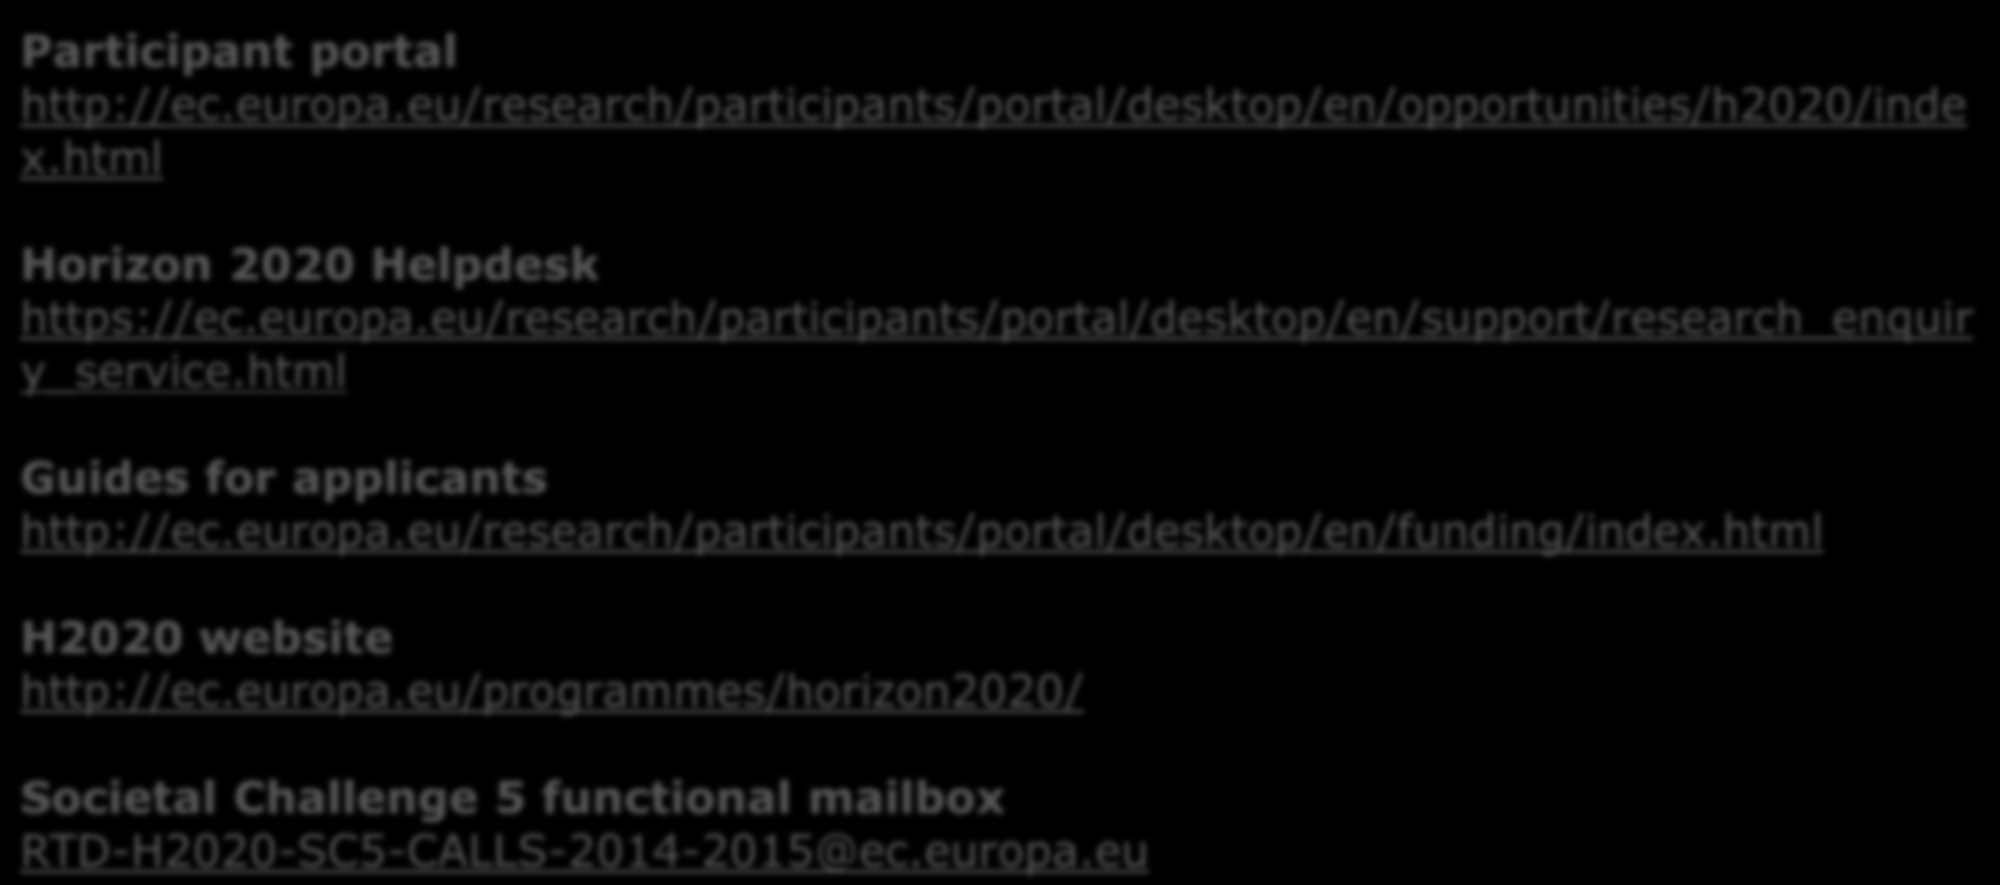 Πηγές ευρωπαϊκής πληροφόρησης: Participant portal http://ec.europa.eu/research/participants/portal/desktop/en/opportunities/h2020/inde x.html Horizon 2020 Helpdesk https://ec.europa.eu/research/participants/portal/desktop/en/support/research_enquir y_service.